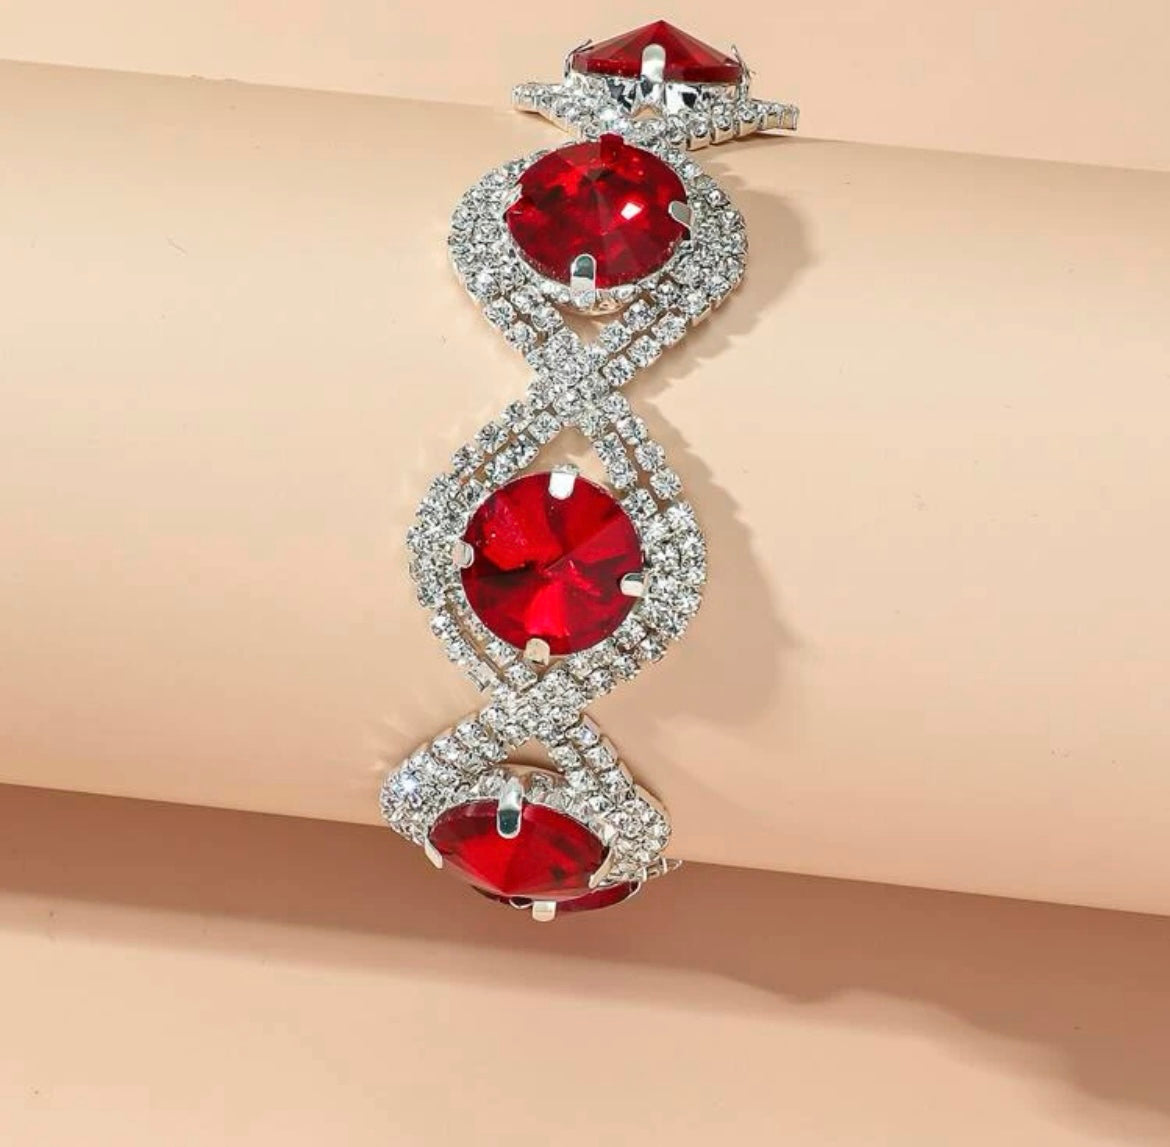 Ruby Inspired Bracelet - Red